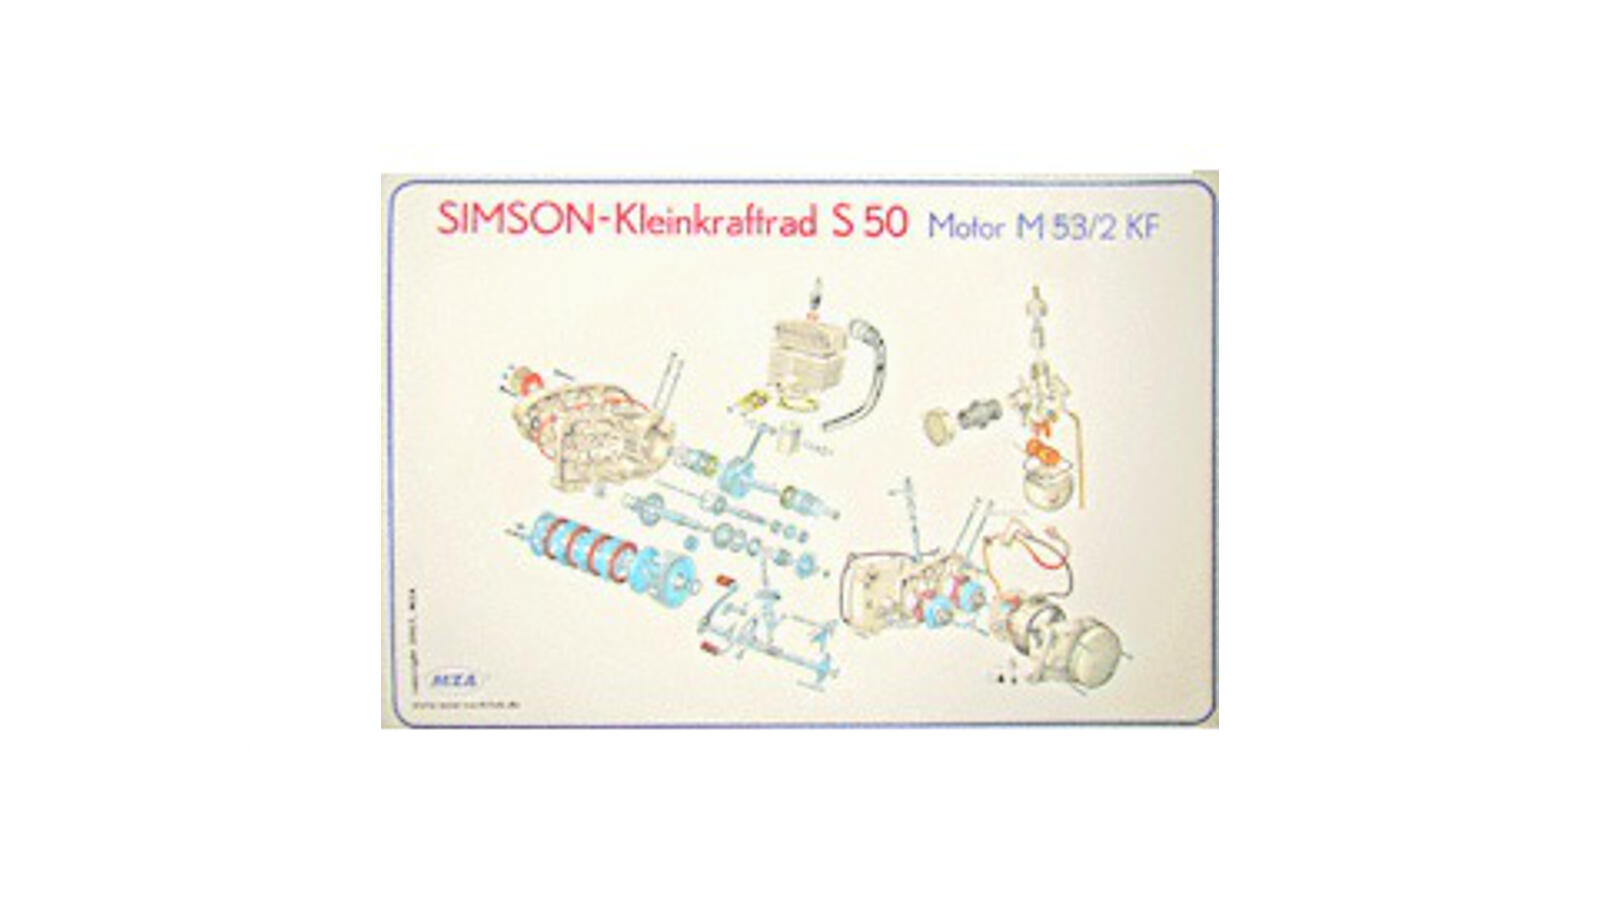 Explosionsdarstellung (72x50cm) für Simson S50 Motor M53/2KF